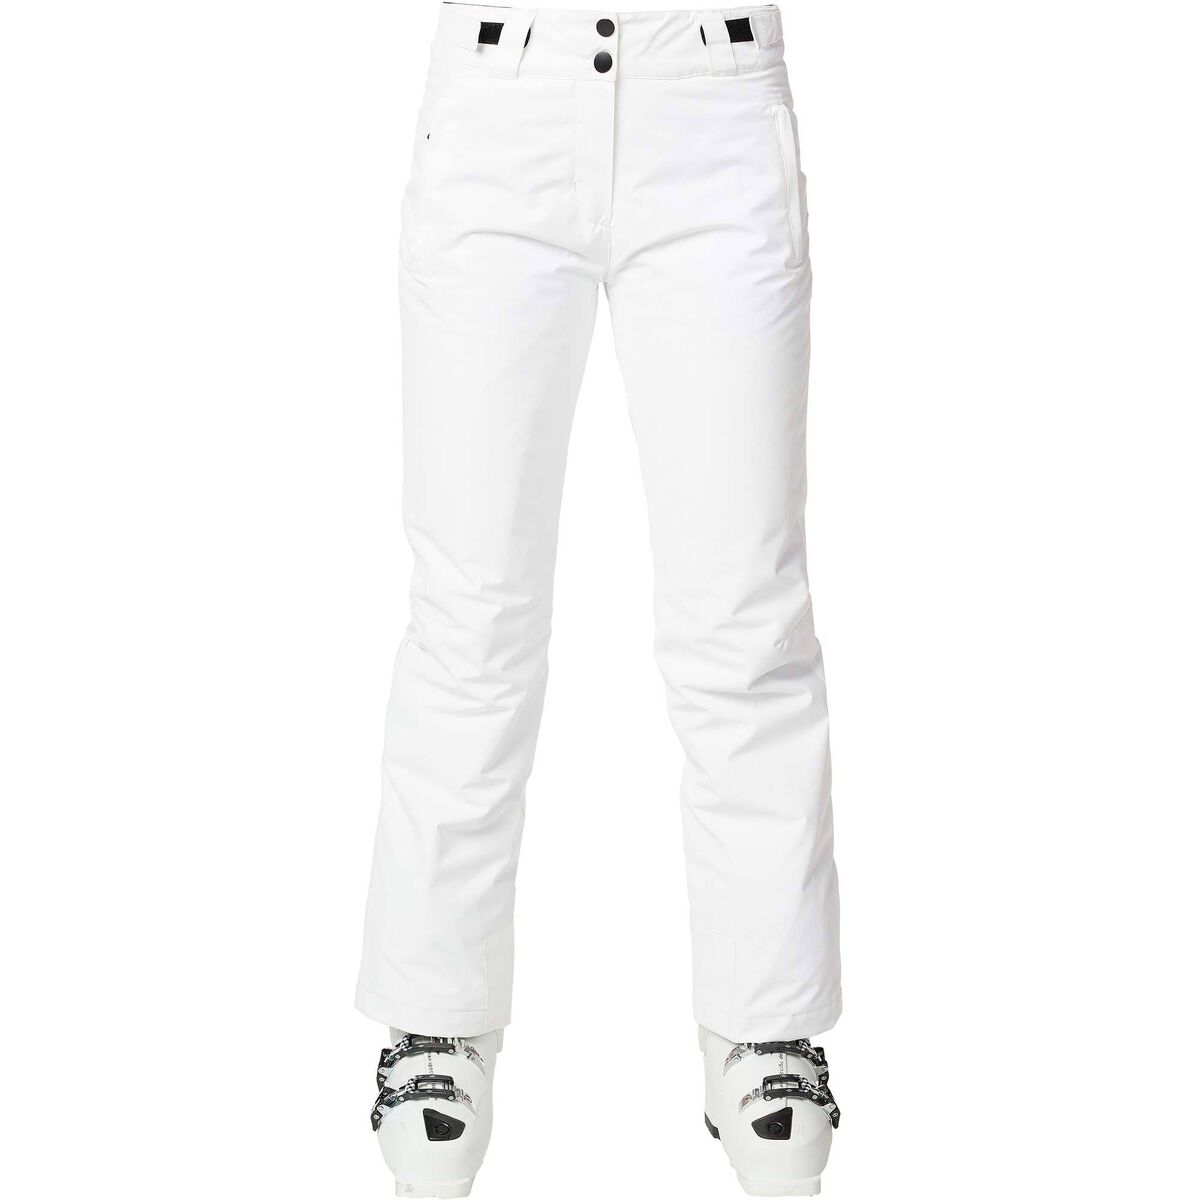 Hyra Women's Marmore Recco Ski Pant - White 